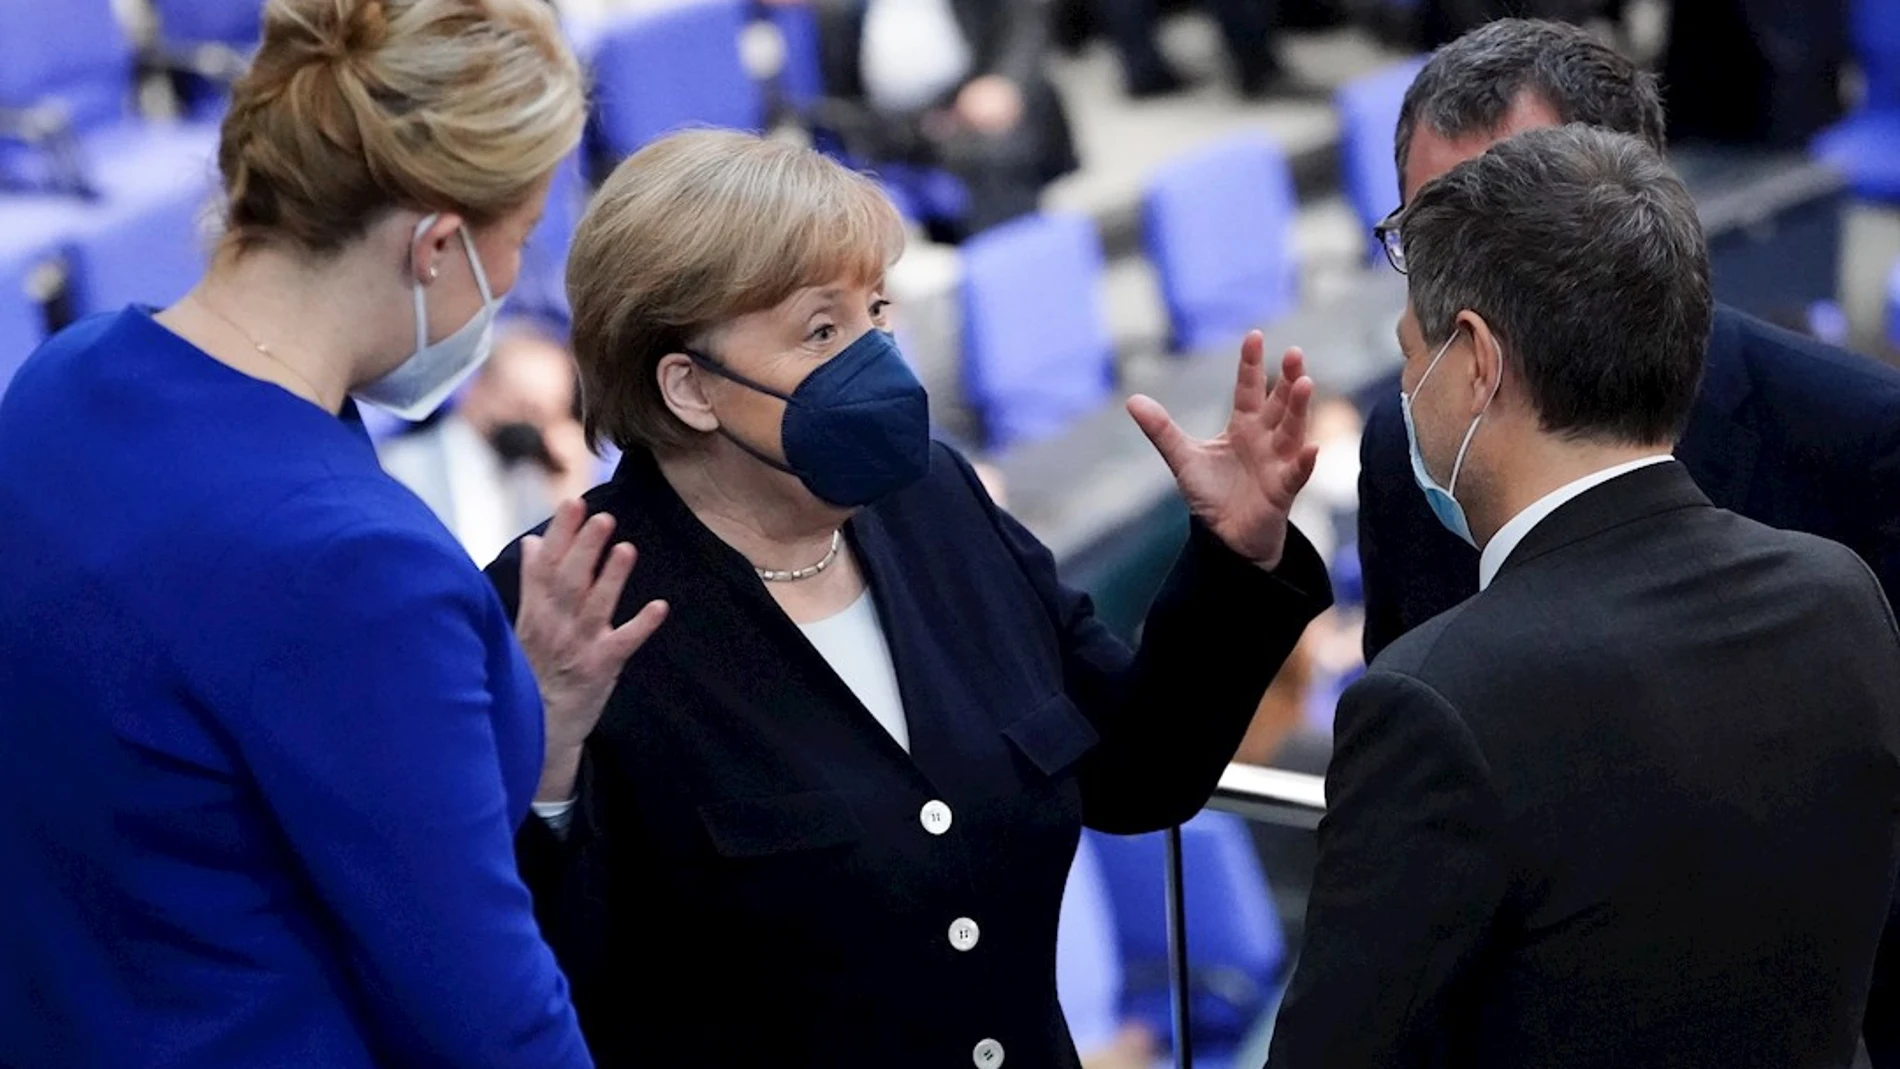 Larga ovación a Angela Merkel en el Parlamento alemán en su despedida como canciller